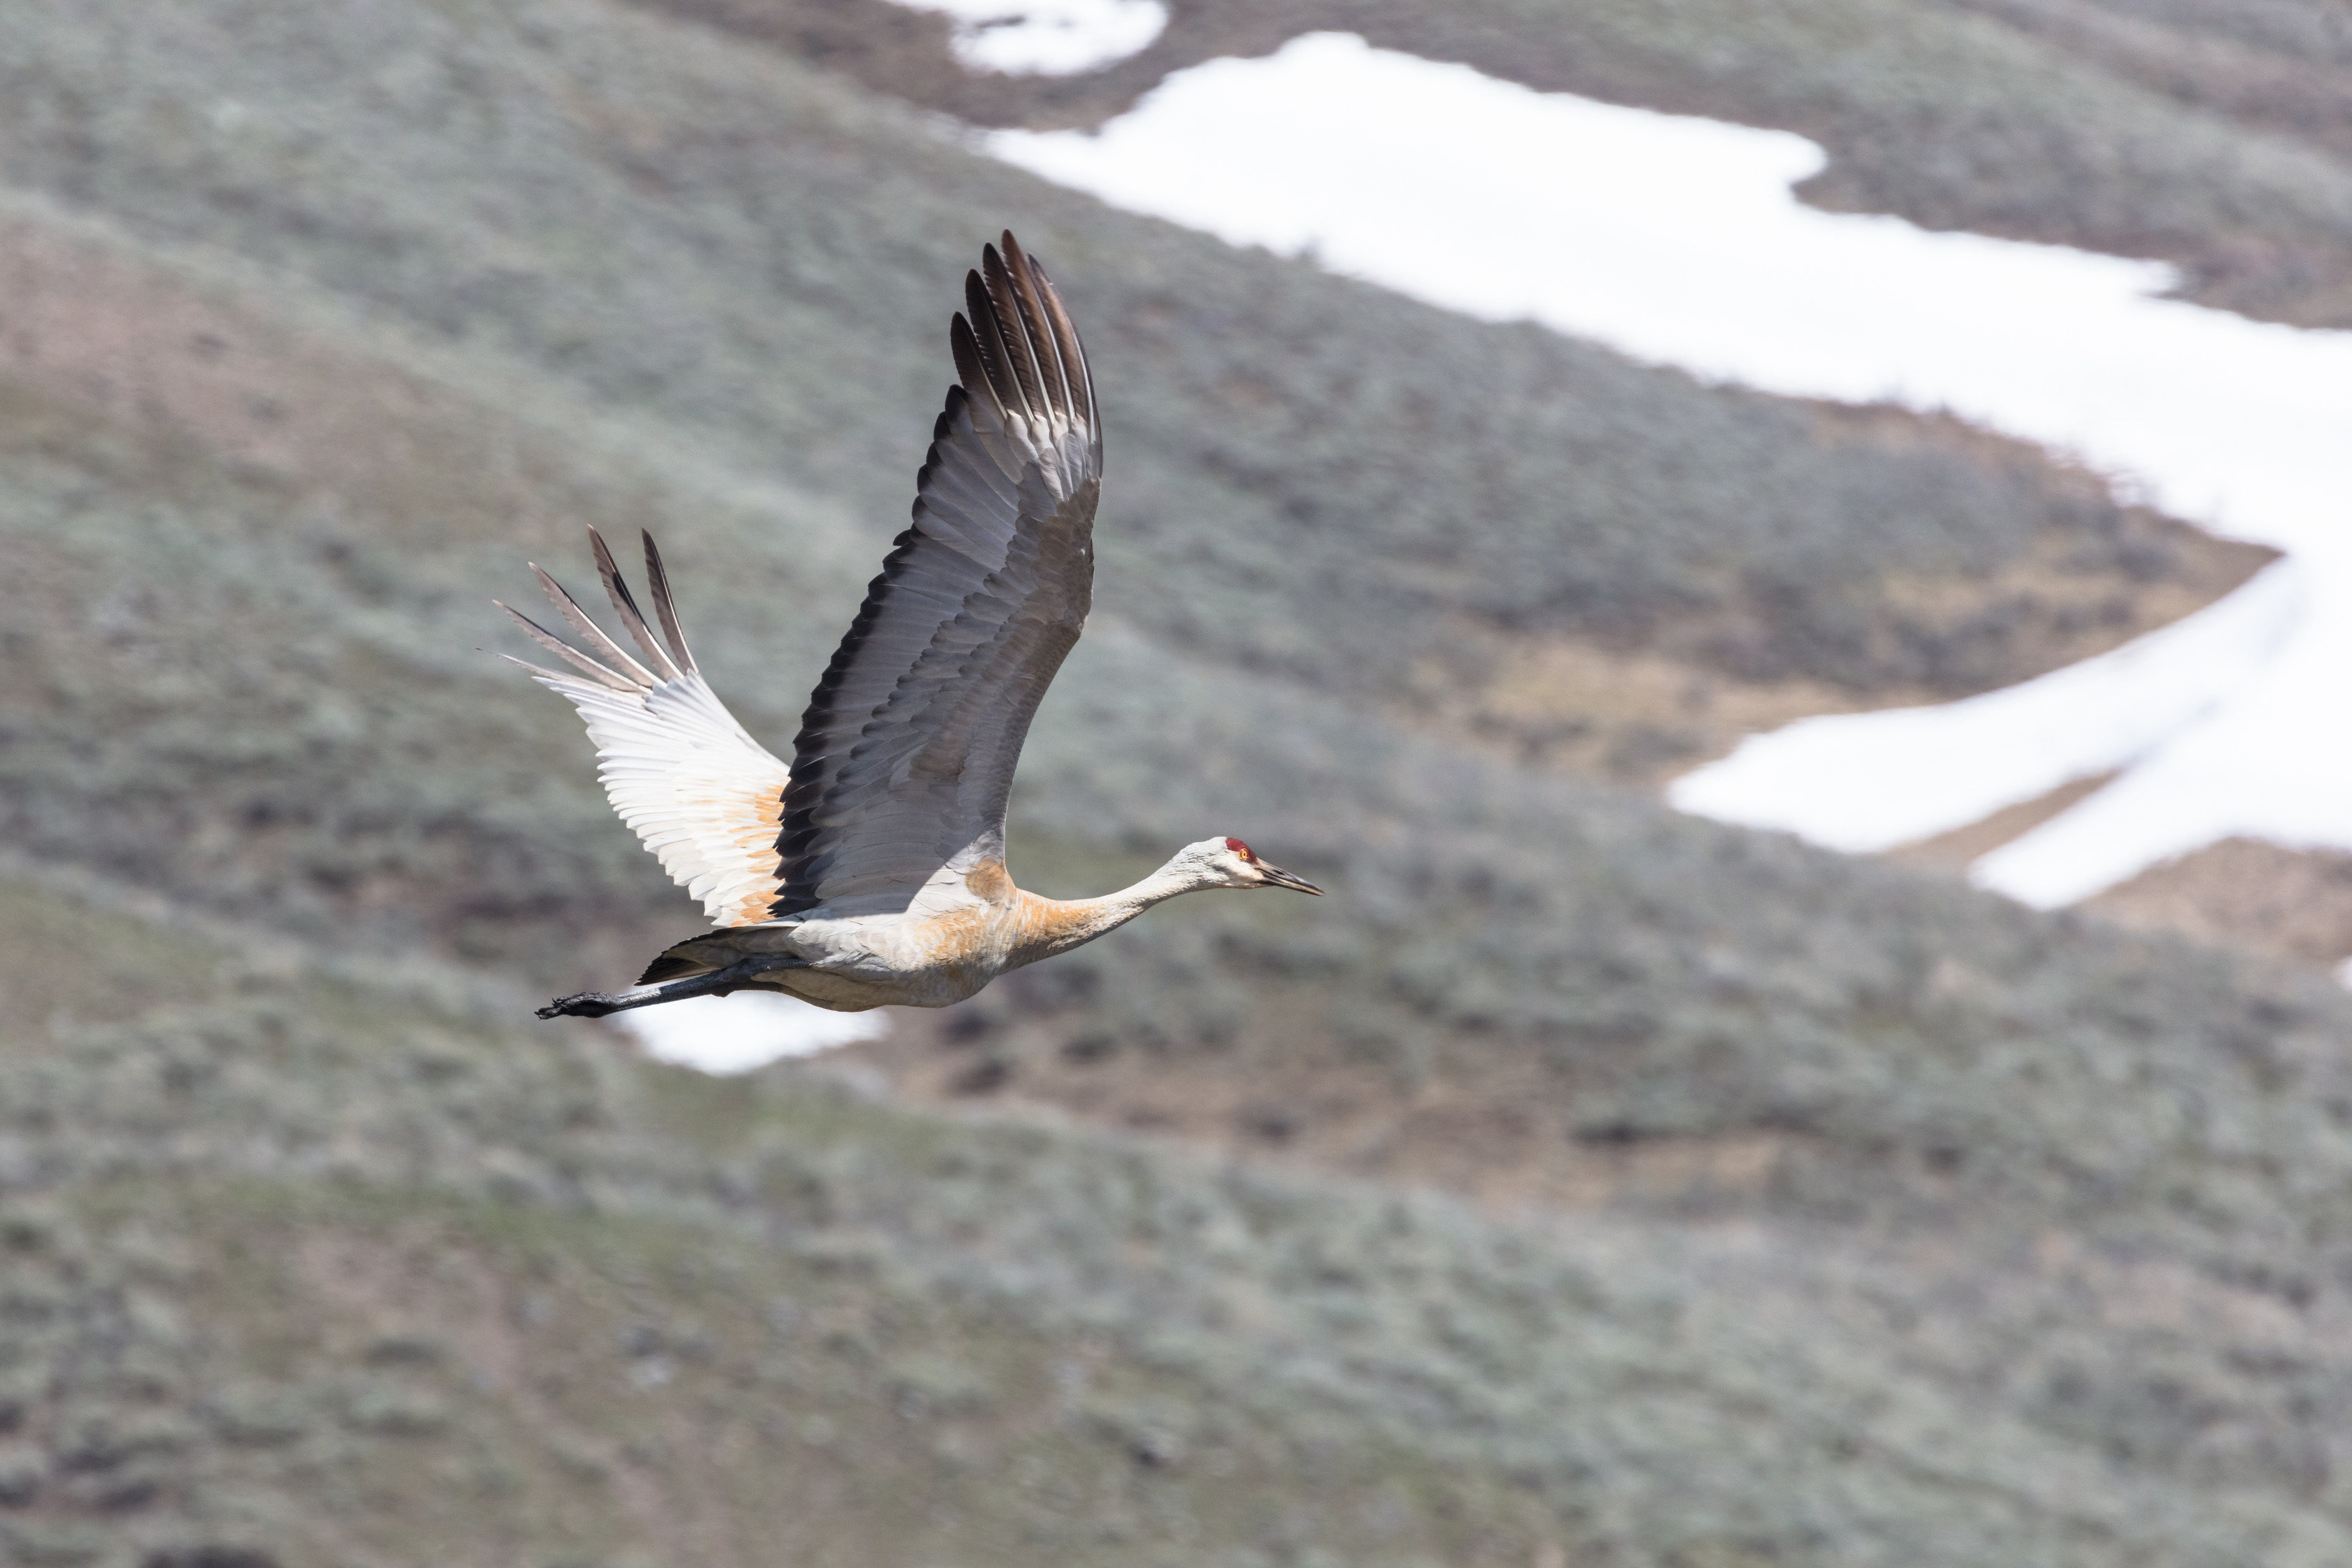 One sandhill crane in flight